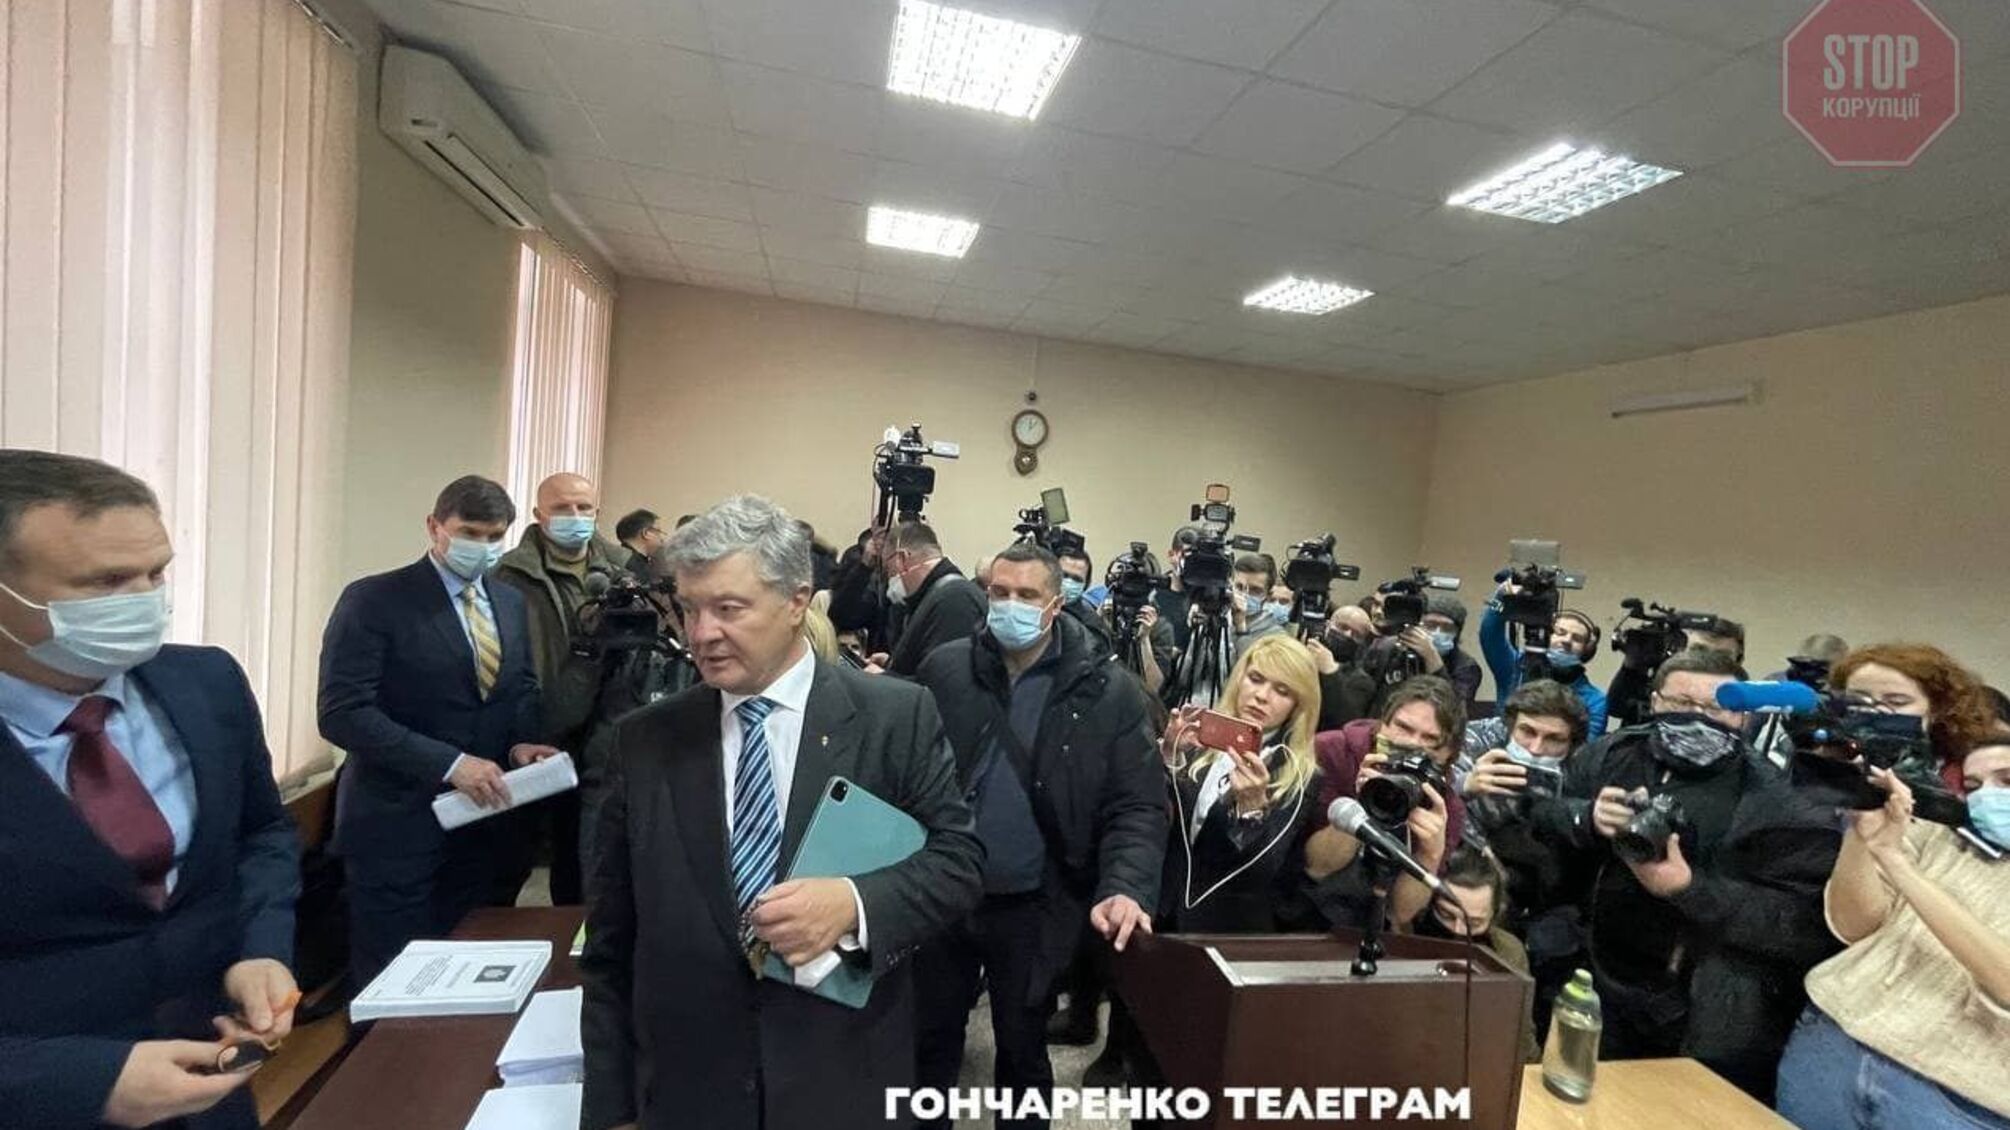 Дело Порошенко: суд объявил перерыв на несколько часов